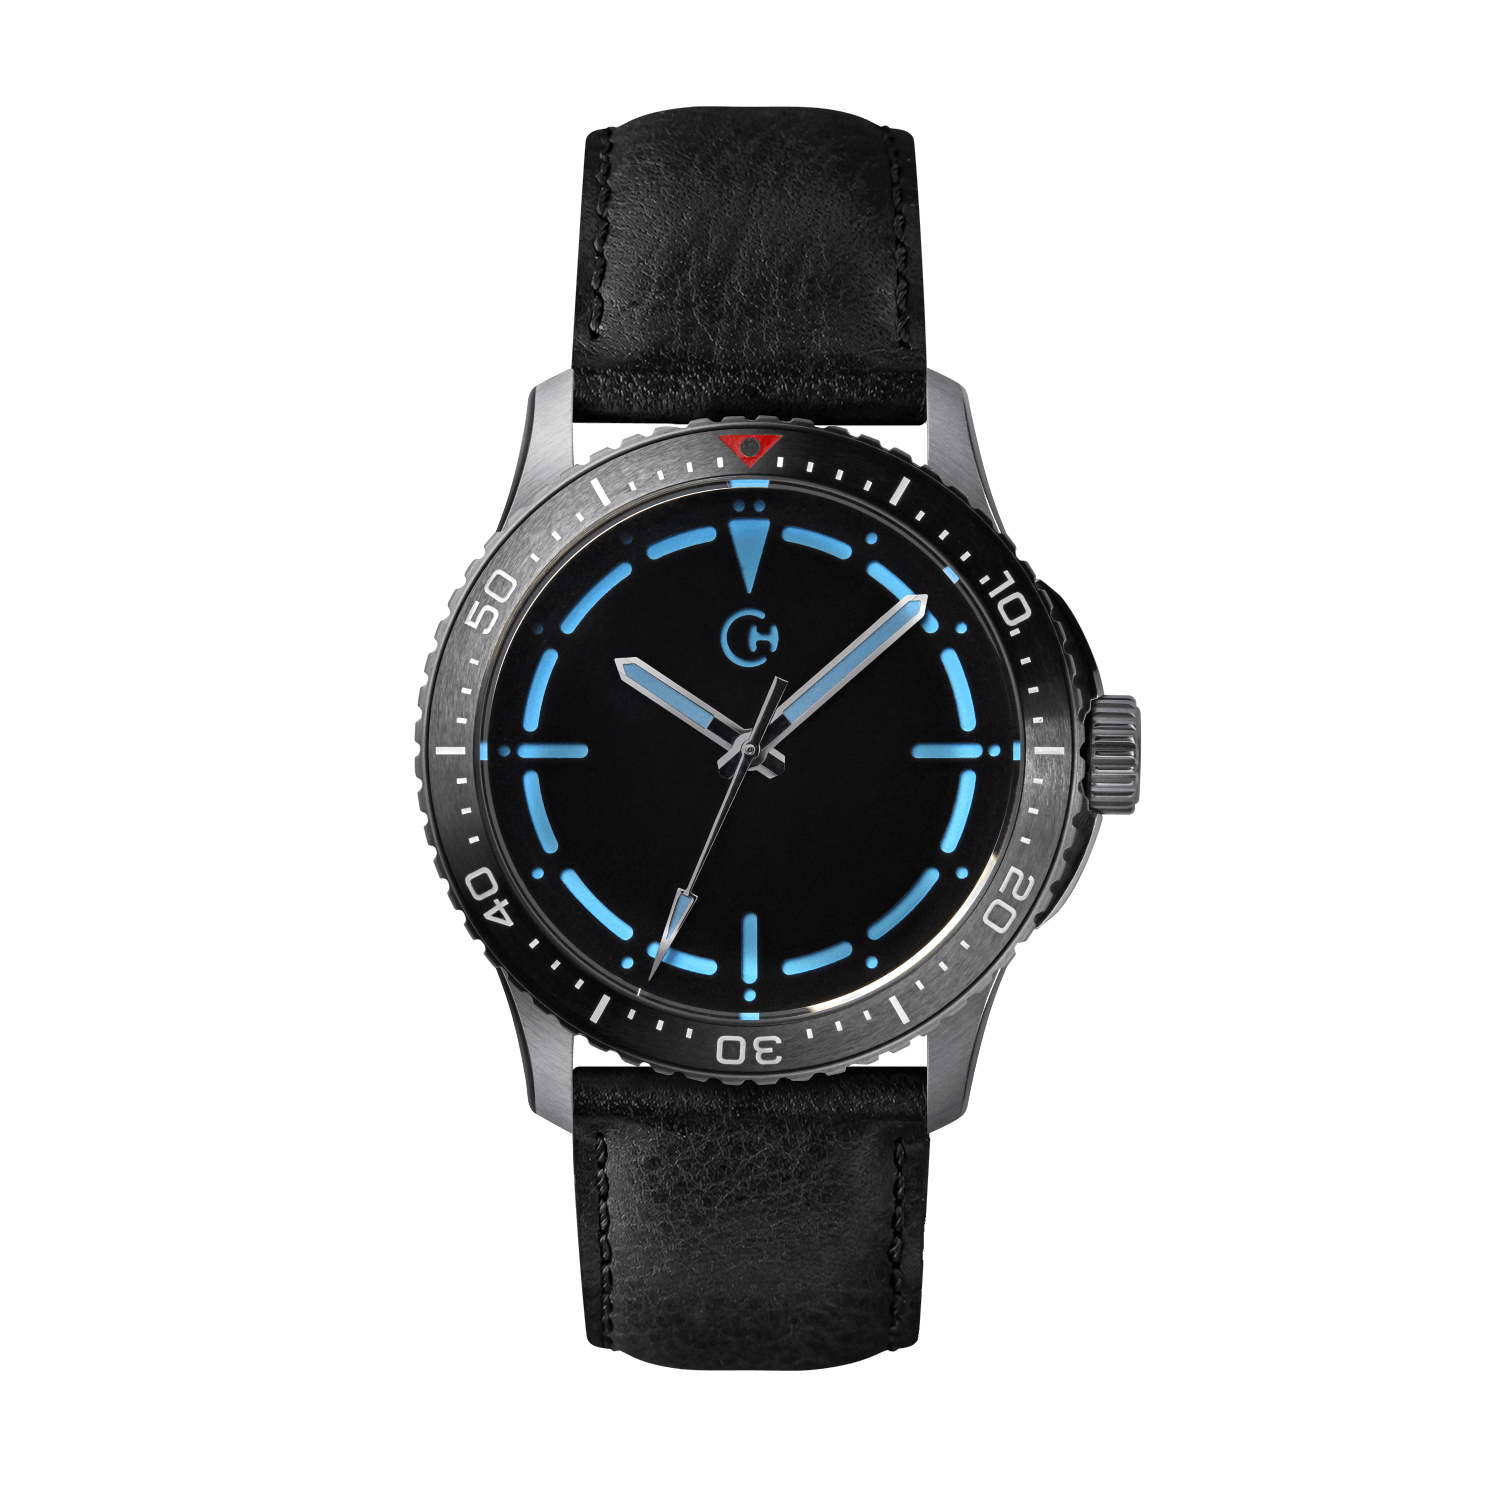 SeaQuest Dive černý kožený řemínek, 22mm, rychloupínací stěžejka, potápěčské hodinky Chronotechna modrý číselník, ocelové pouzdro